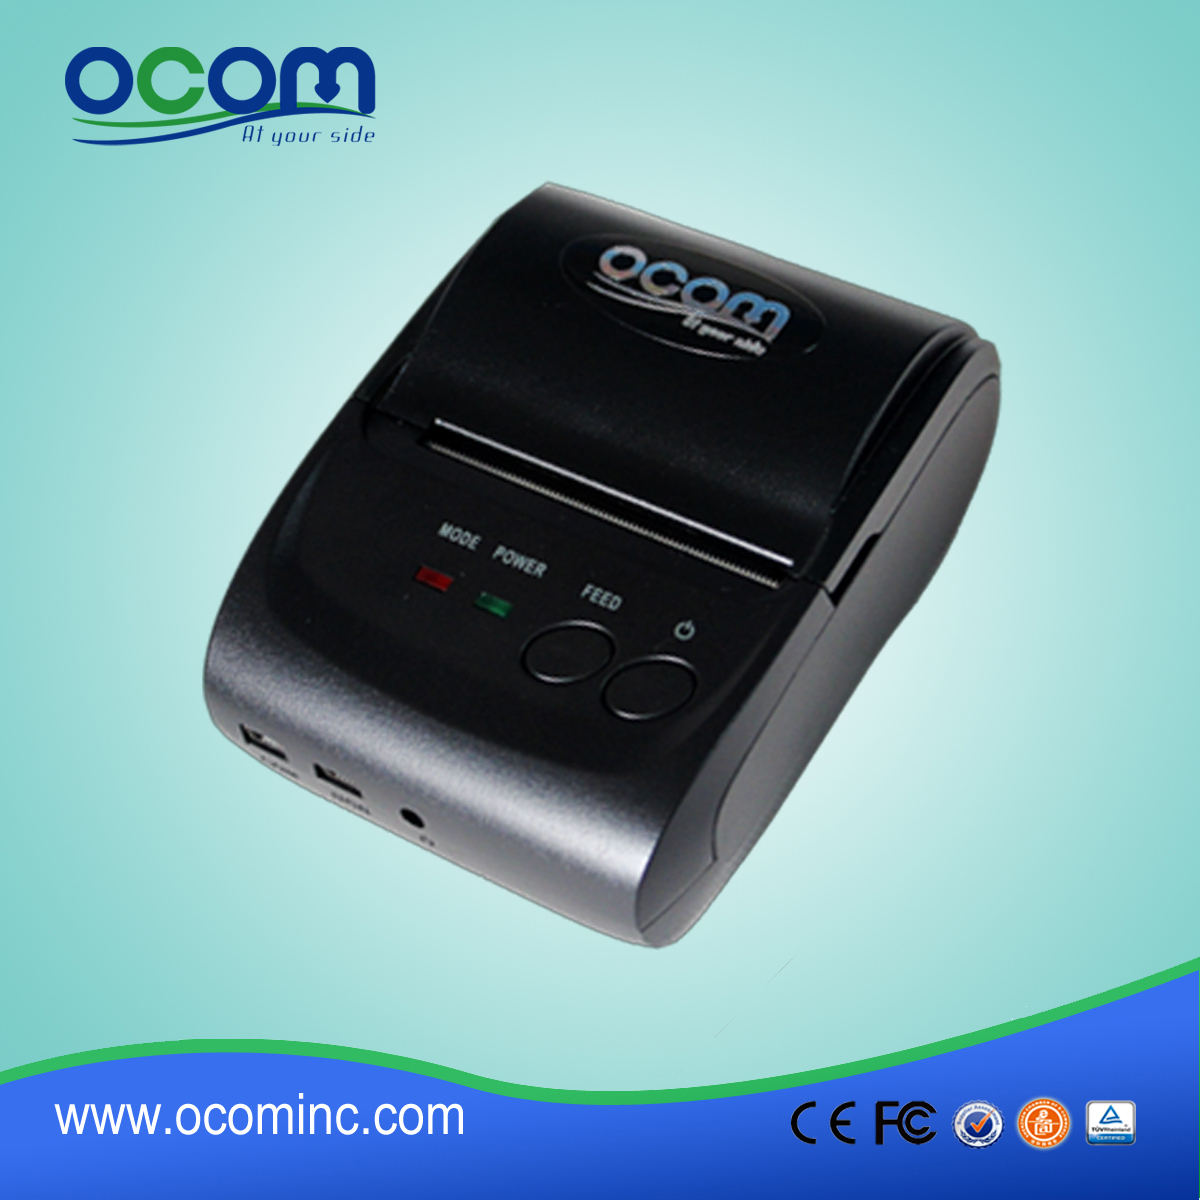 OCPP-M05: المحمولة طابعة جيب بلوتوث، طابعة حرارية رخيصة